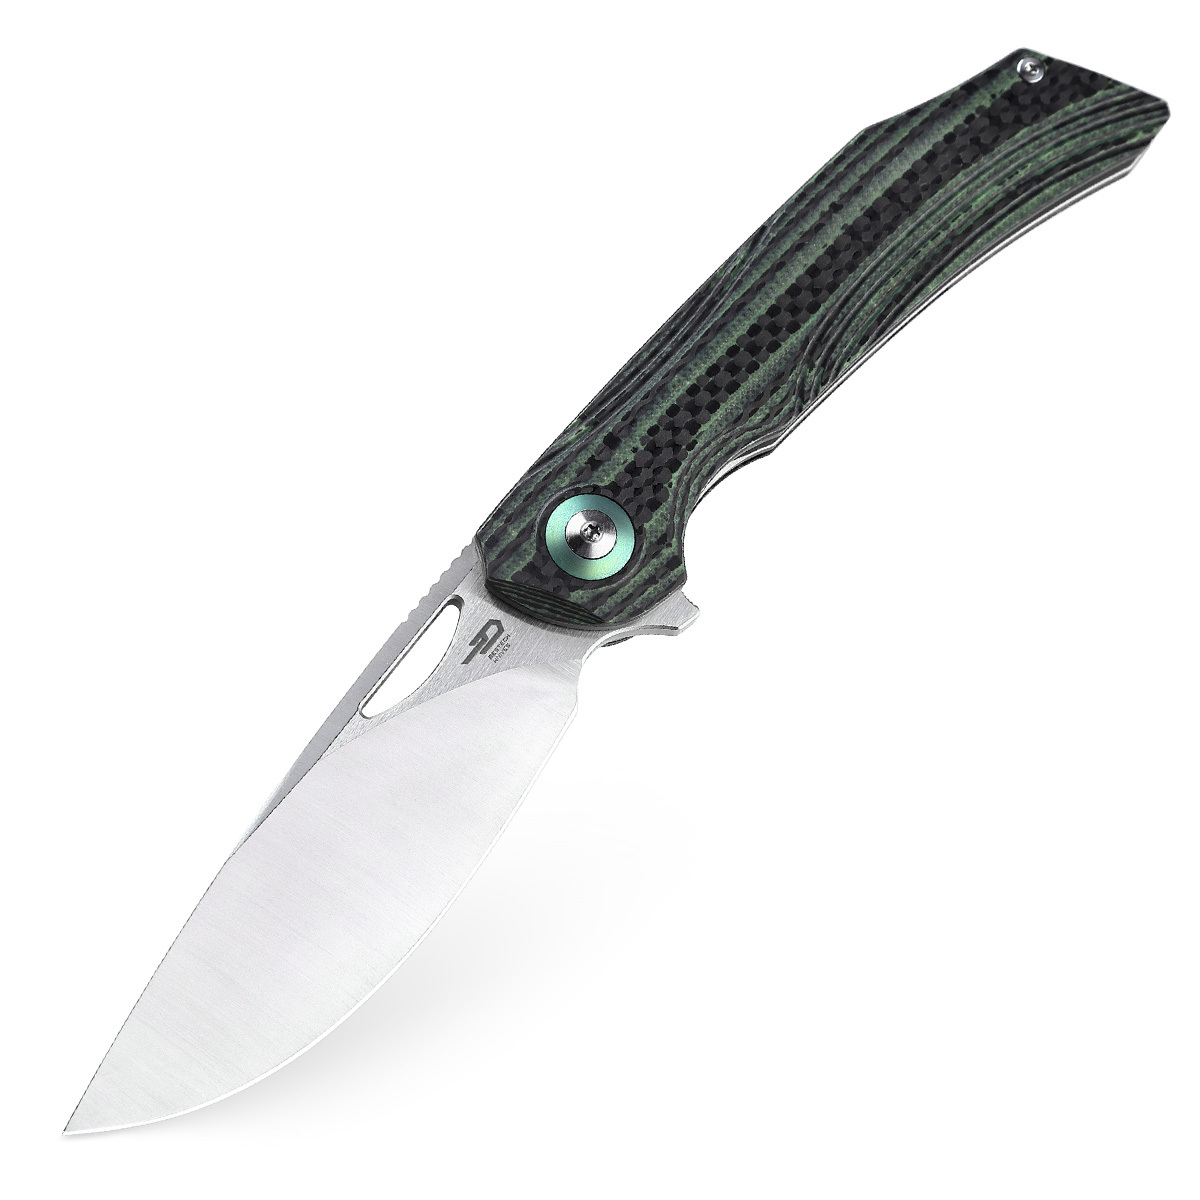 Складной нож Bestech Falko, сталь 154CM, рукоять G10/Carbon fiber, зеленый складной нож bestech swordfish зеленый d2